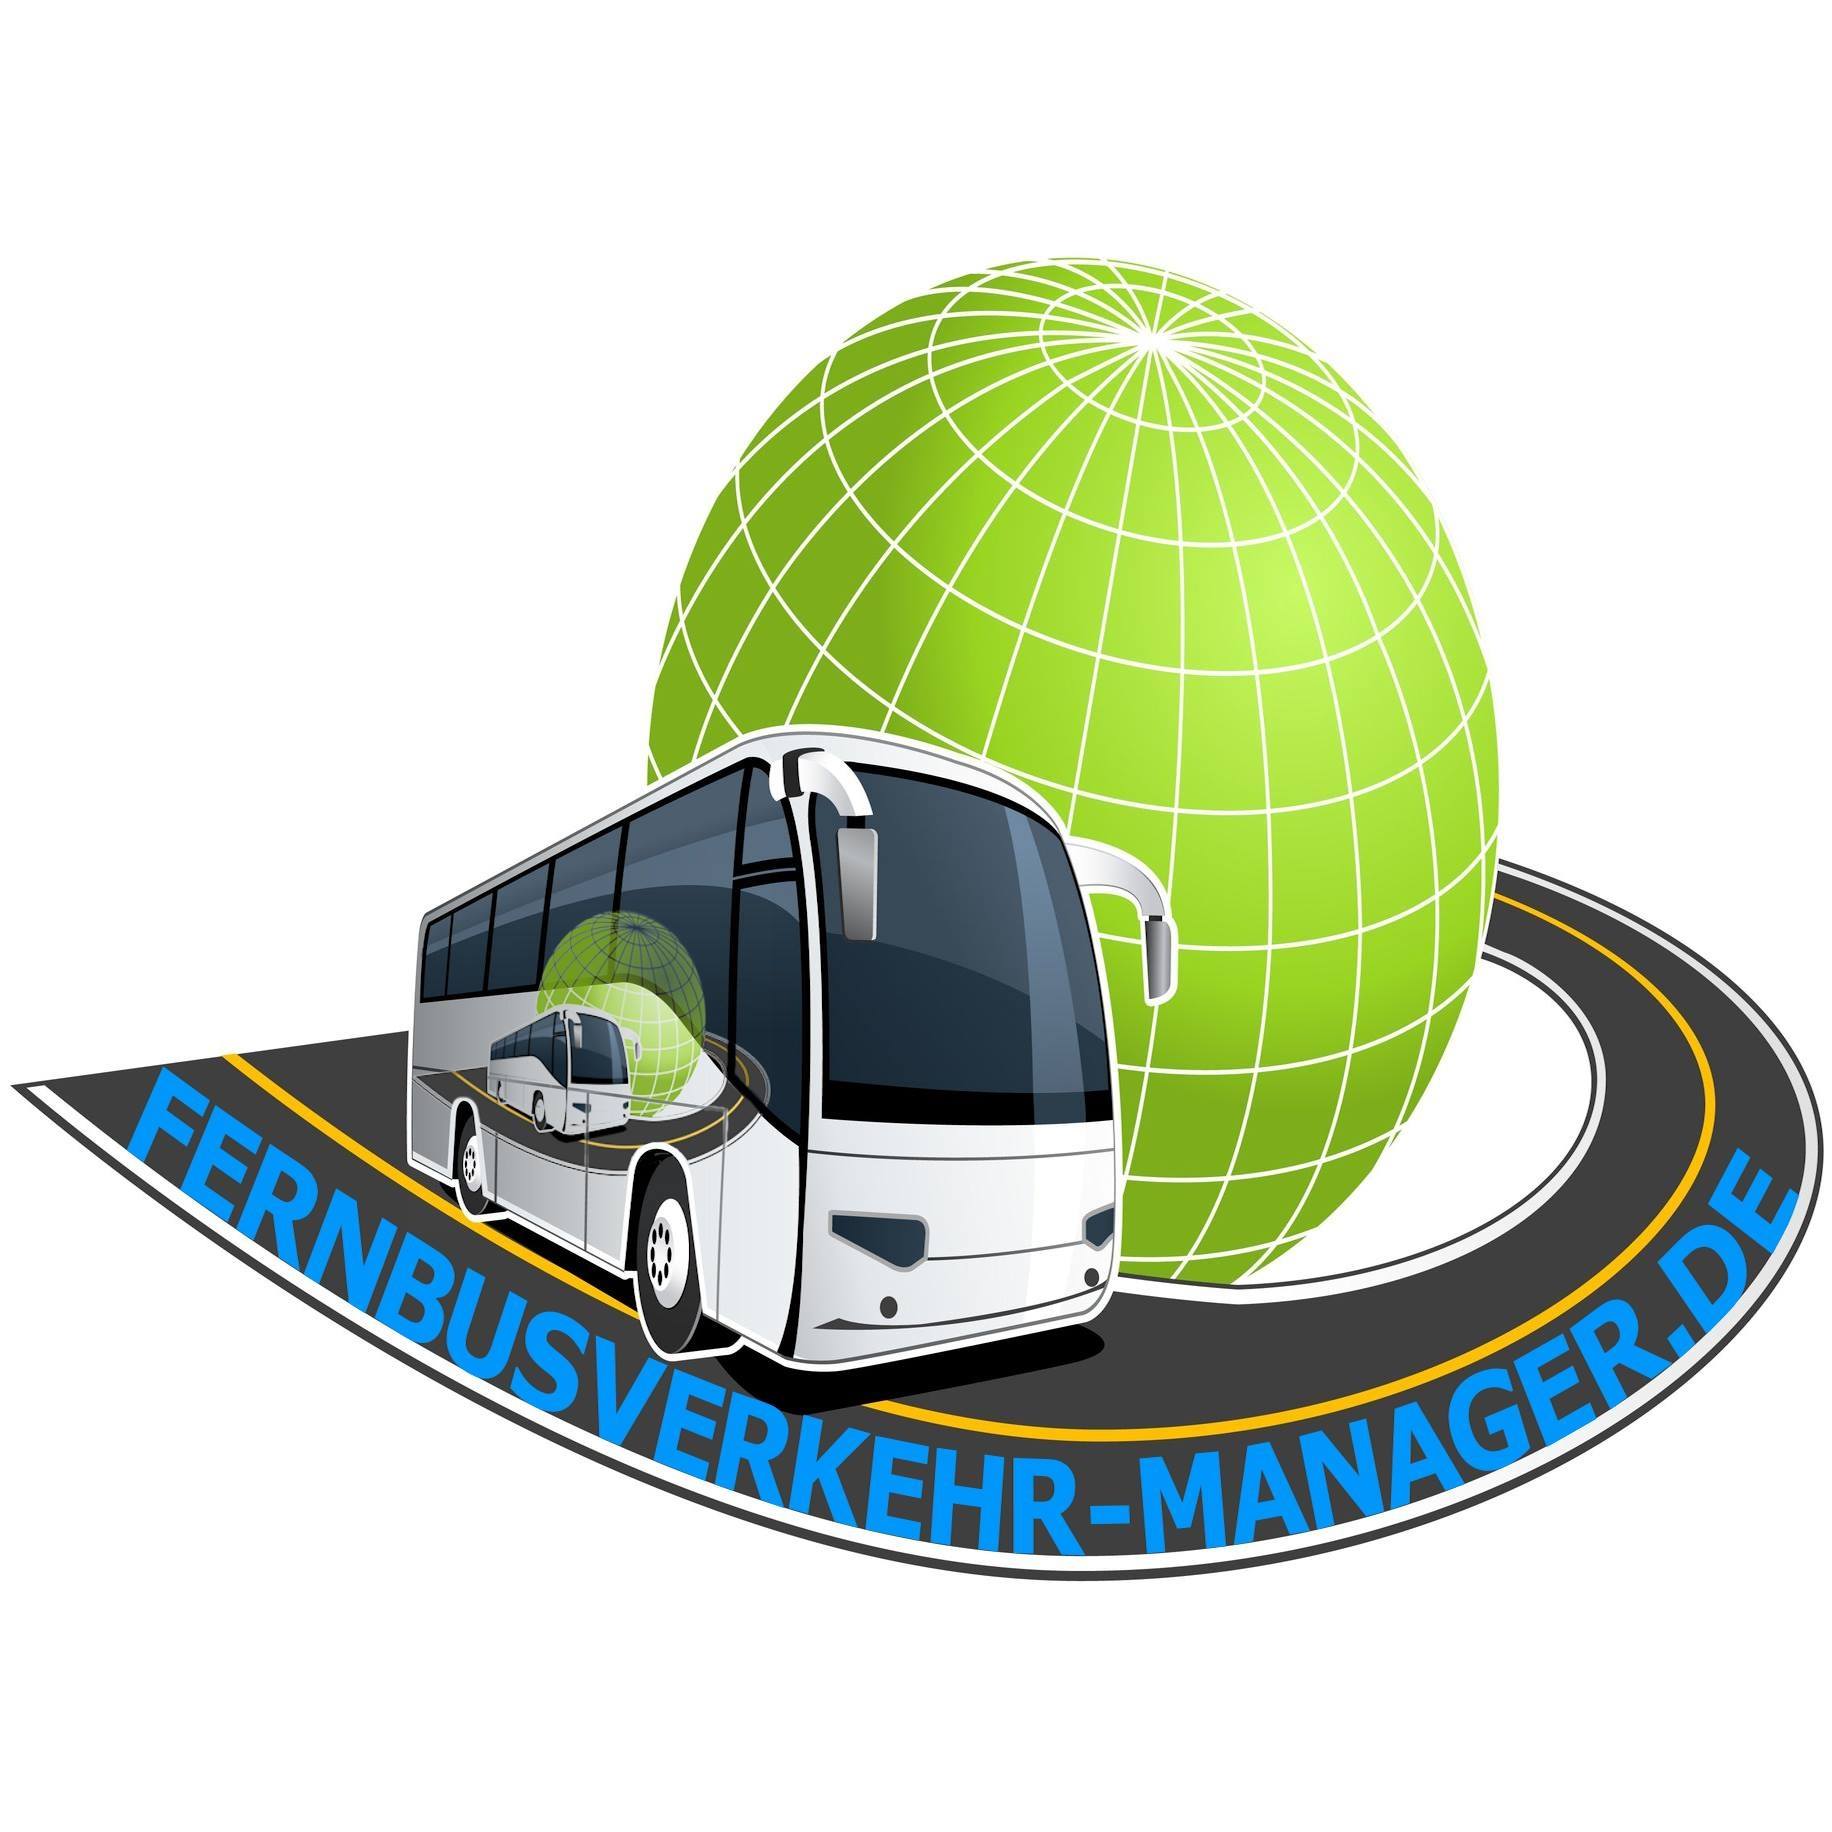 fernbusverkehrmanager logo